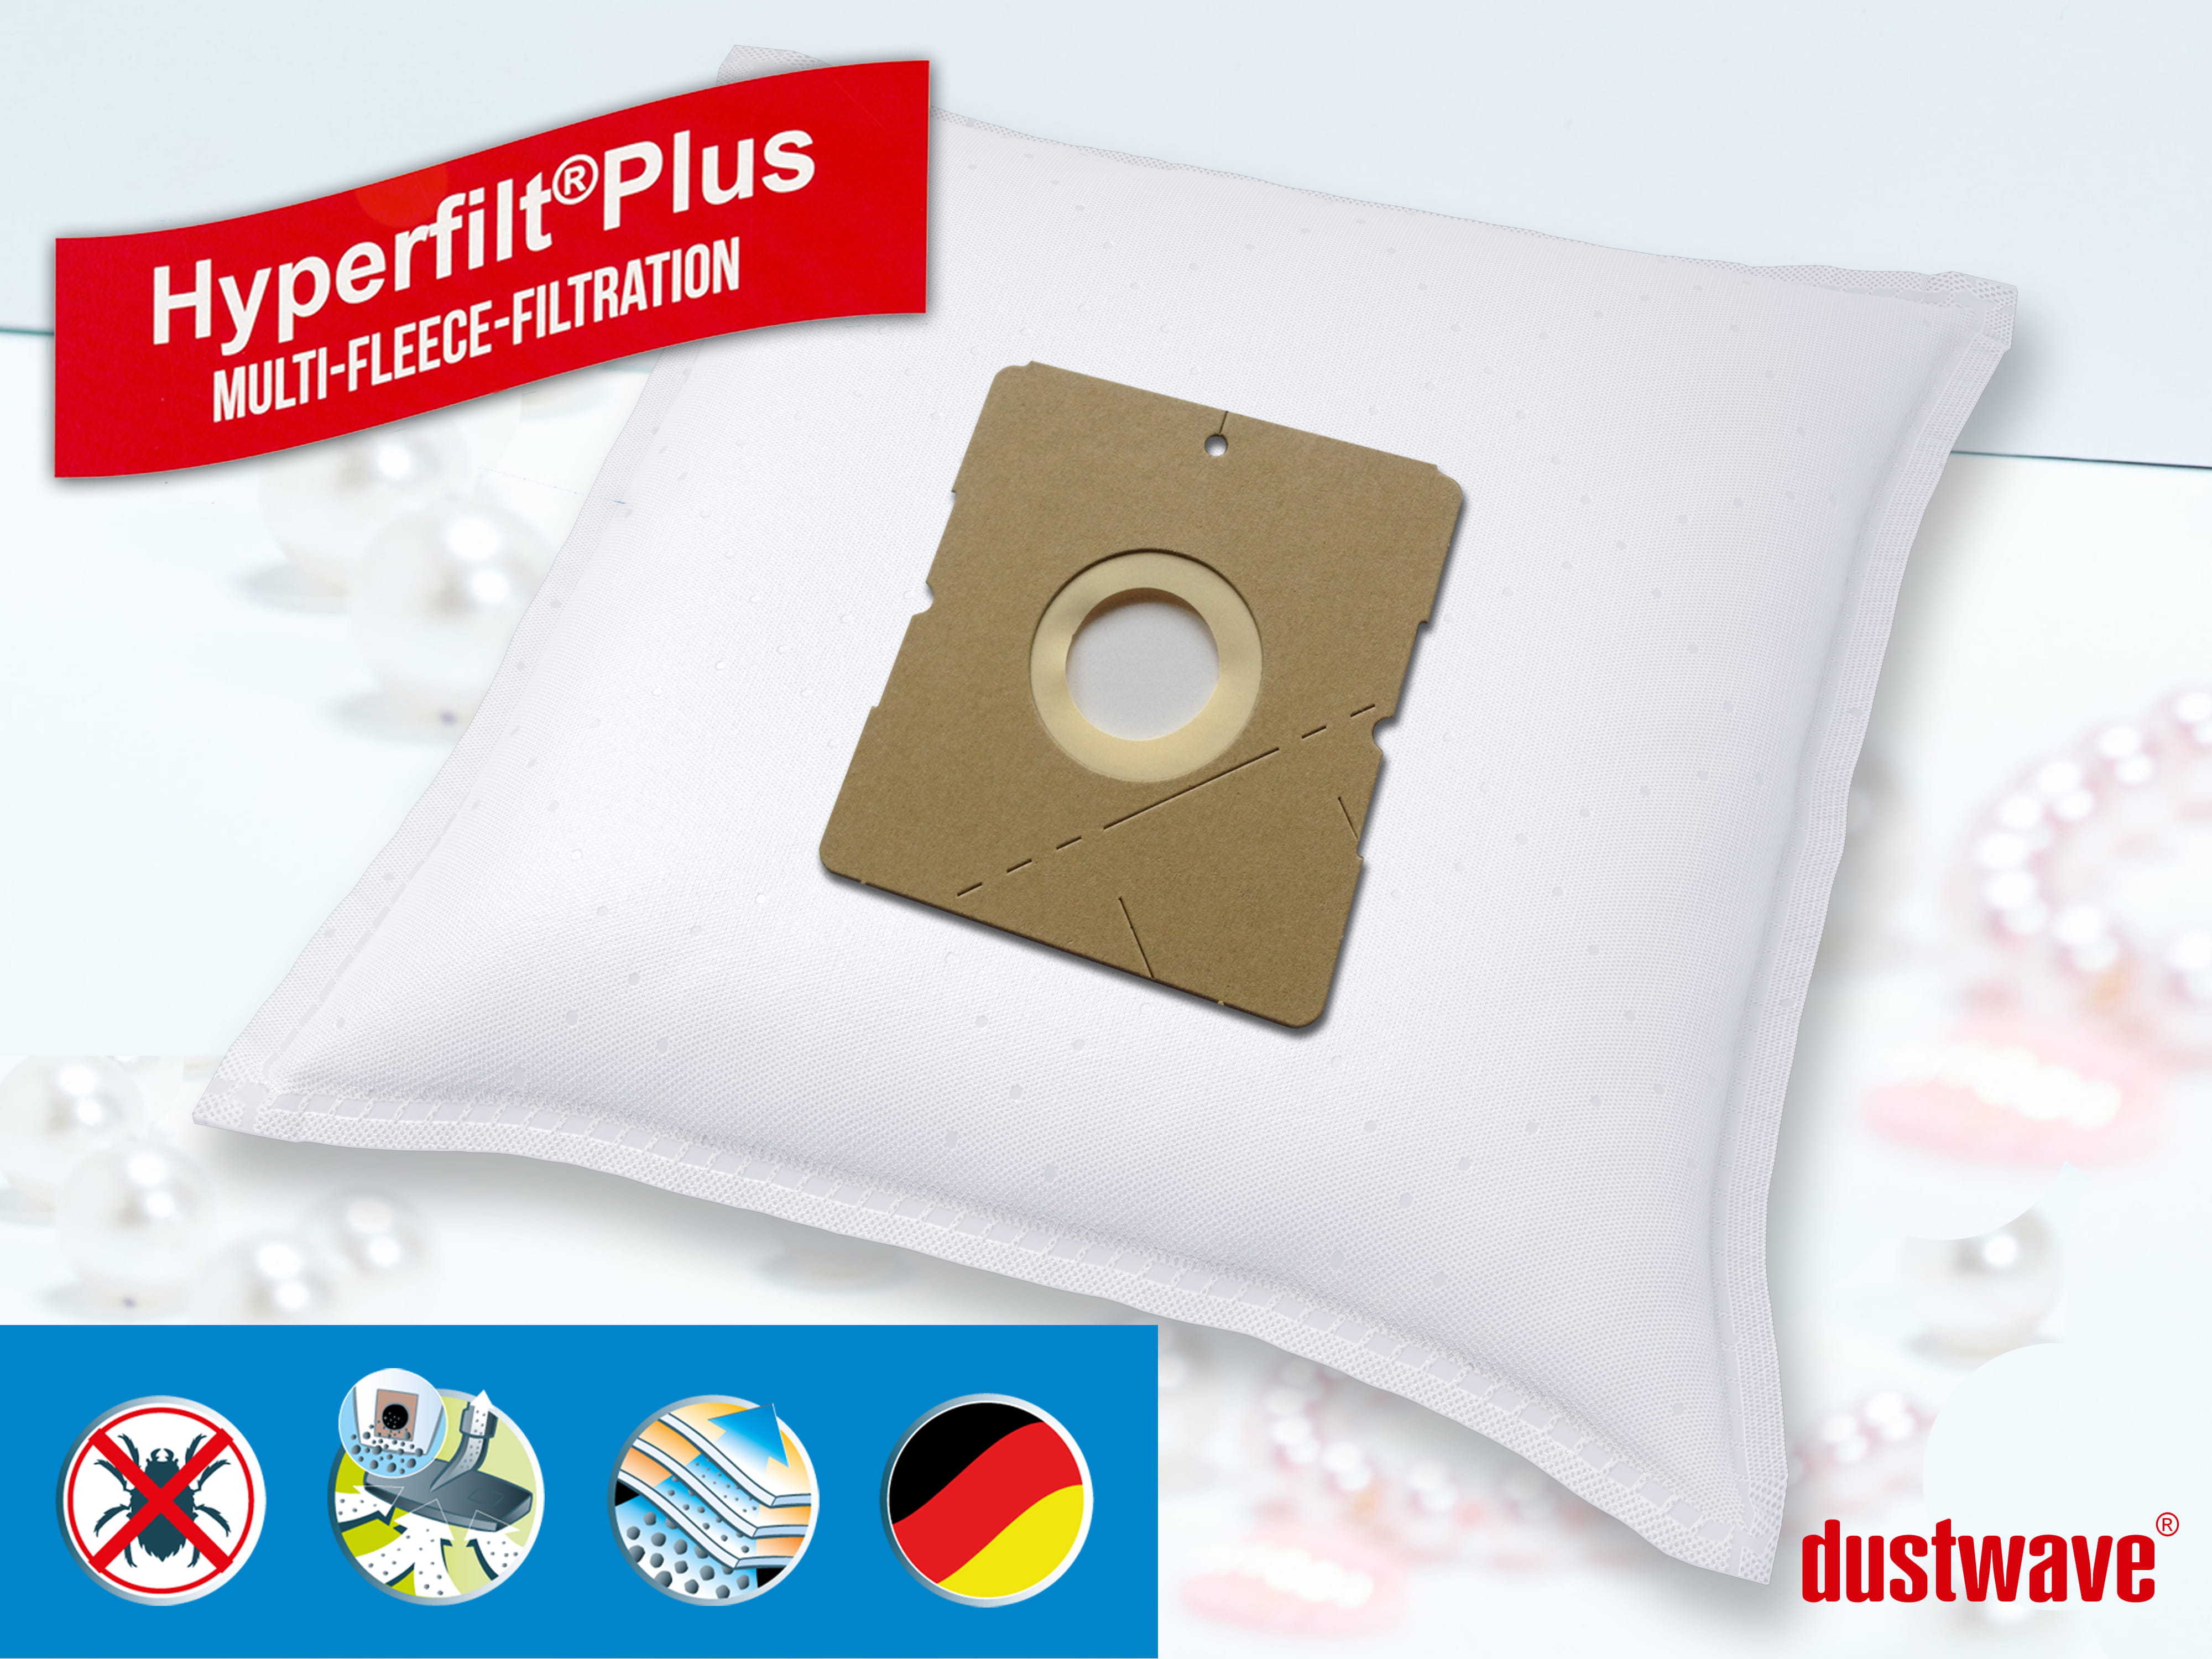 Dustwave® 10 Staubsaugerbeutel für AFK BS 1300 C - hocheffizient, mehrlagiges Mikrovlies mit Hygieneverschluss - Made in Germany